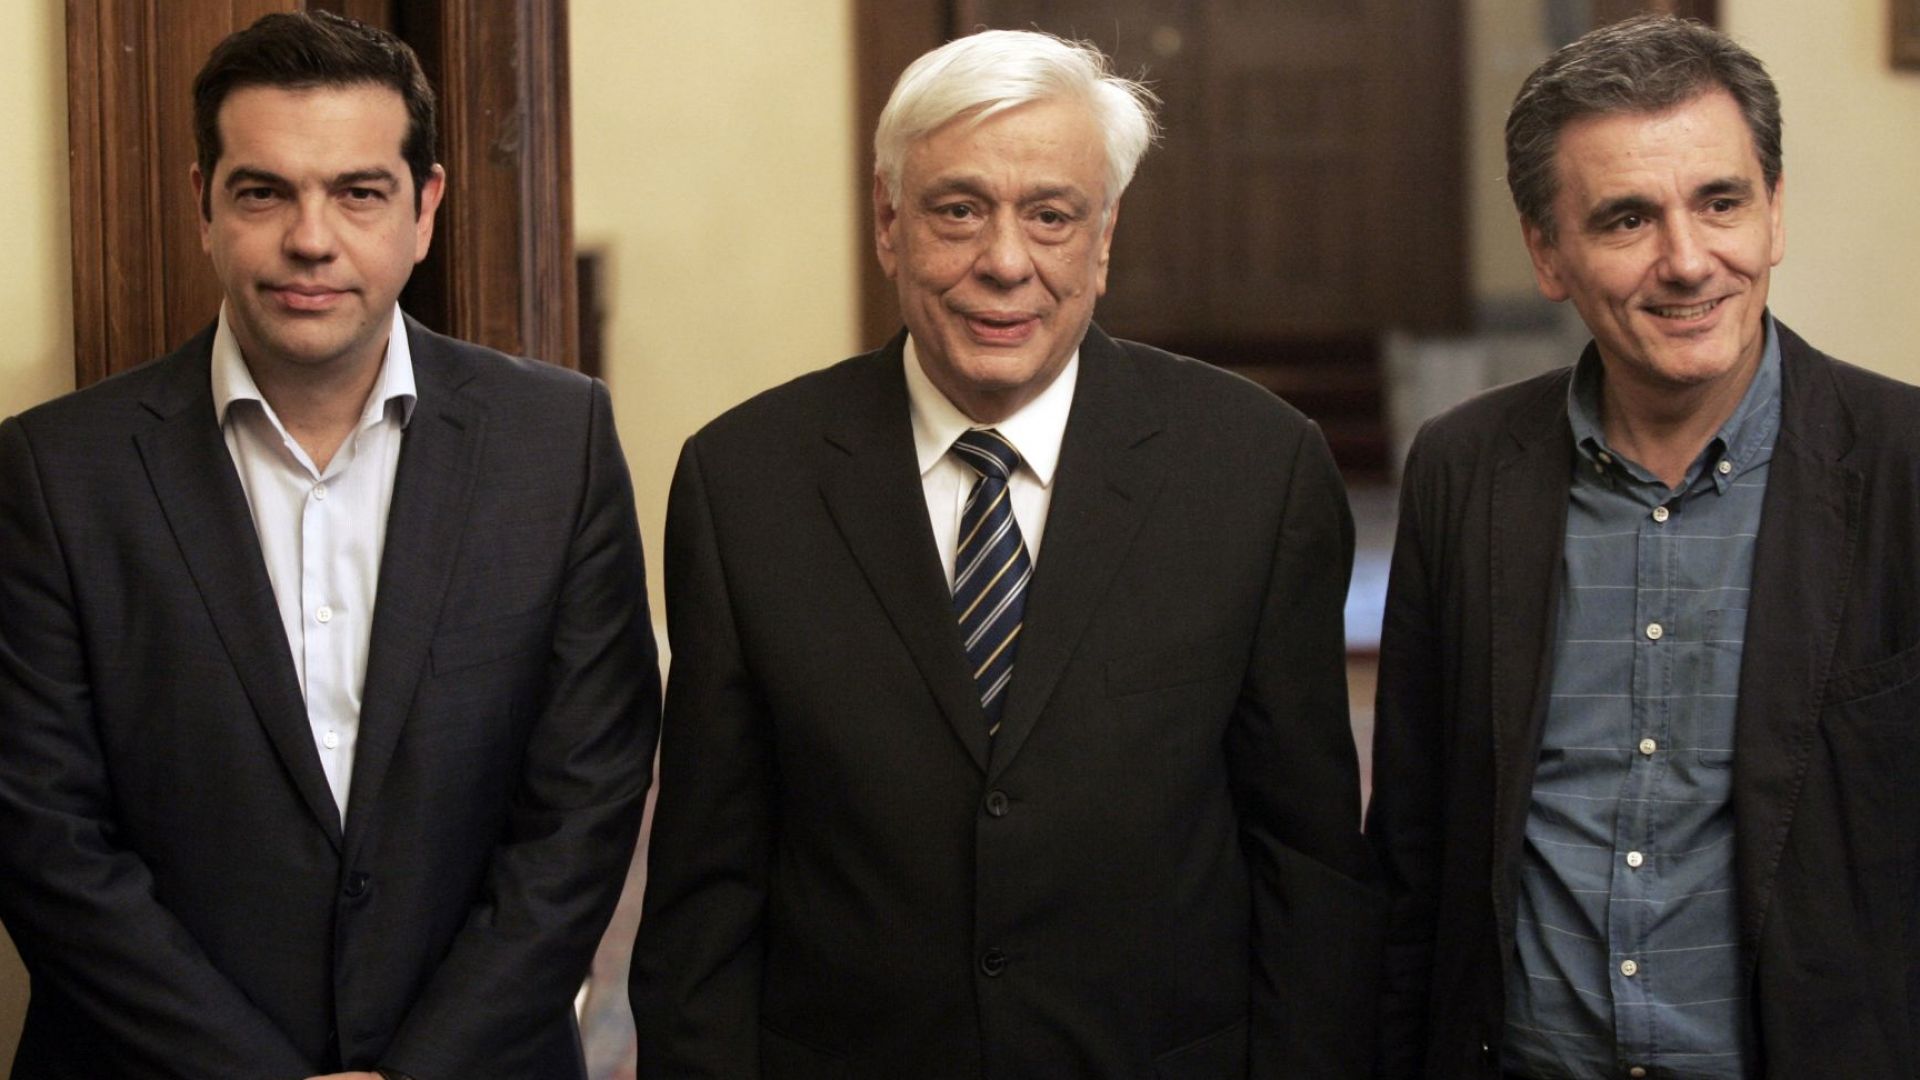 Гръцкият президент Прокопис Павлопулос прие искането да свика предсрочни парламентарни